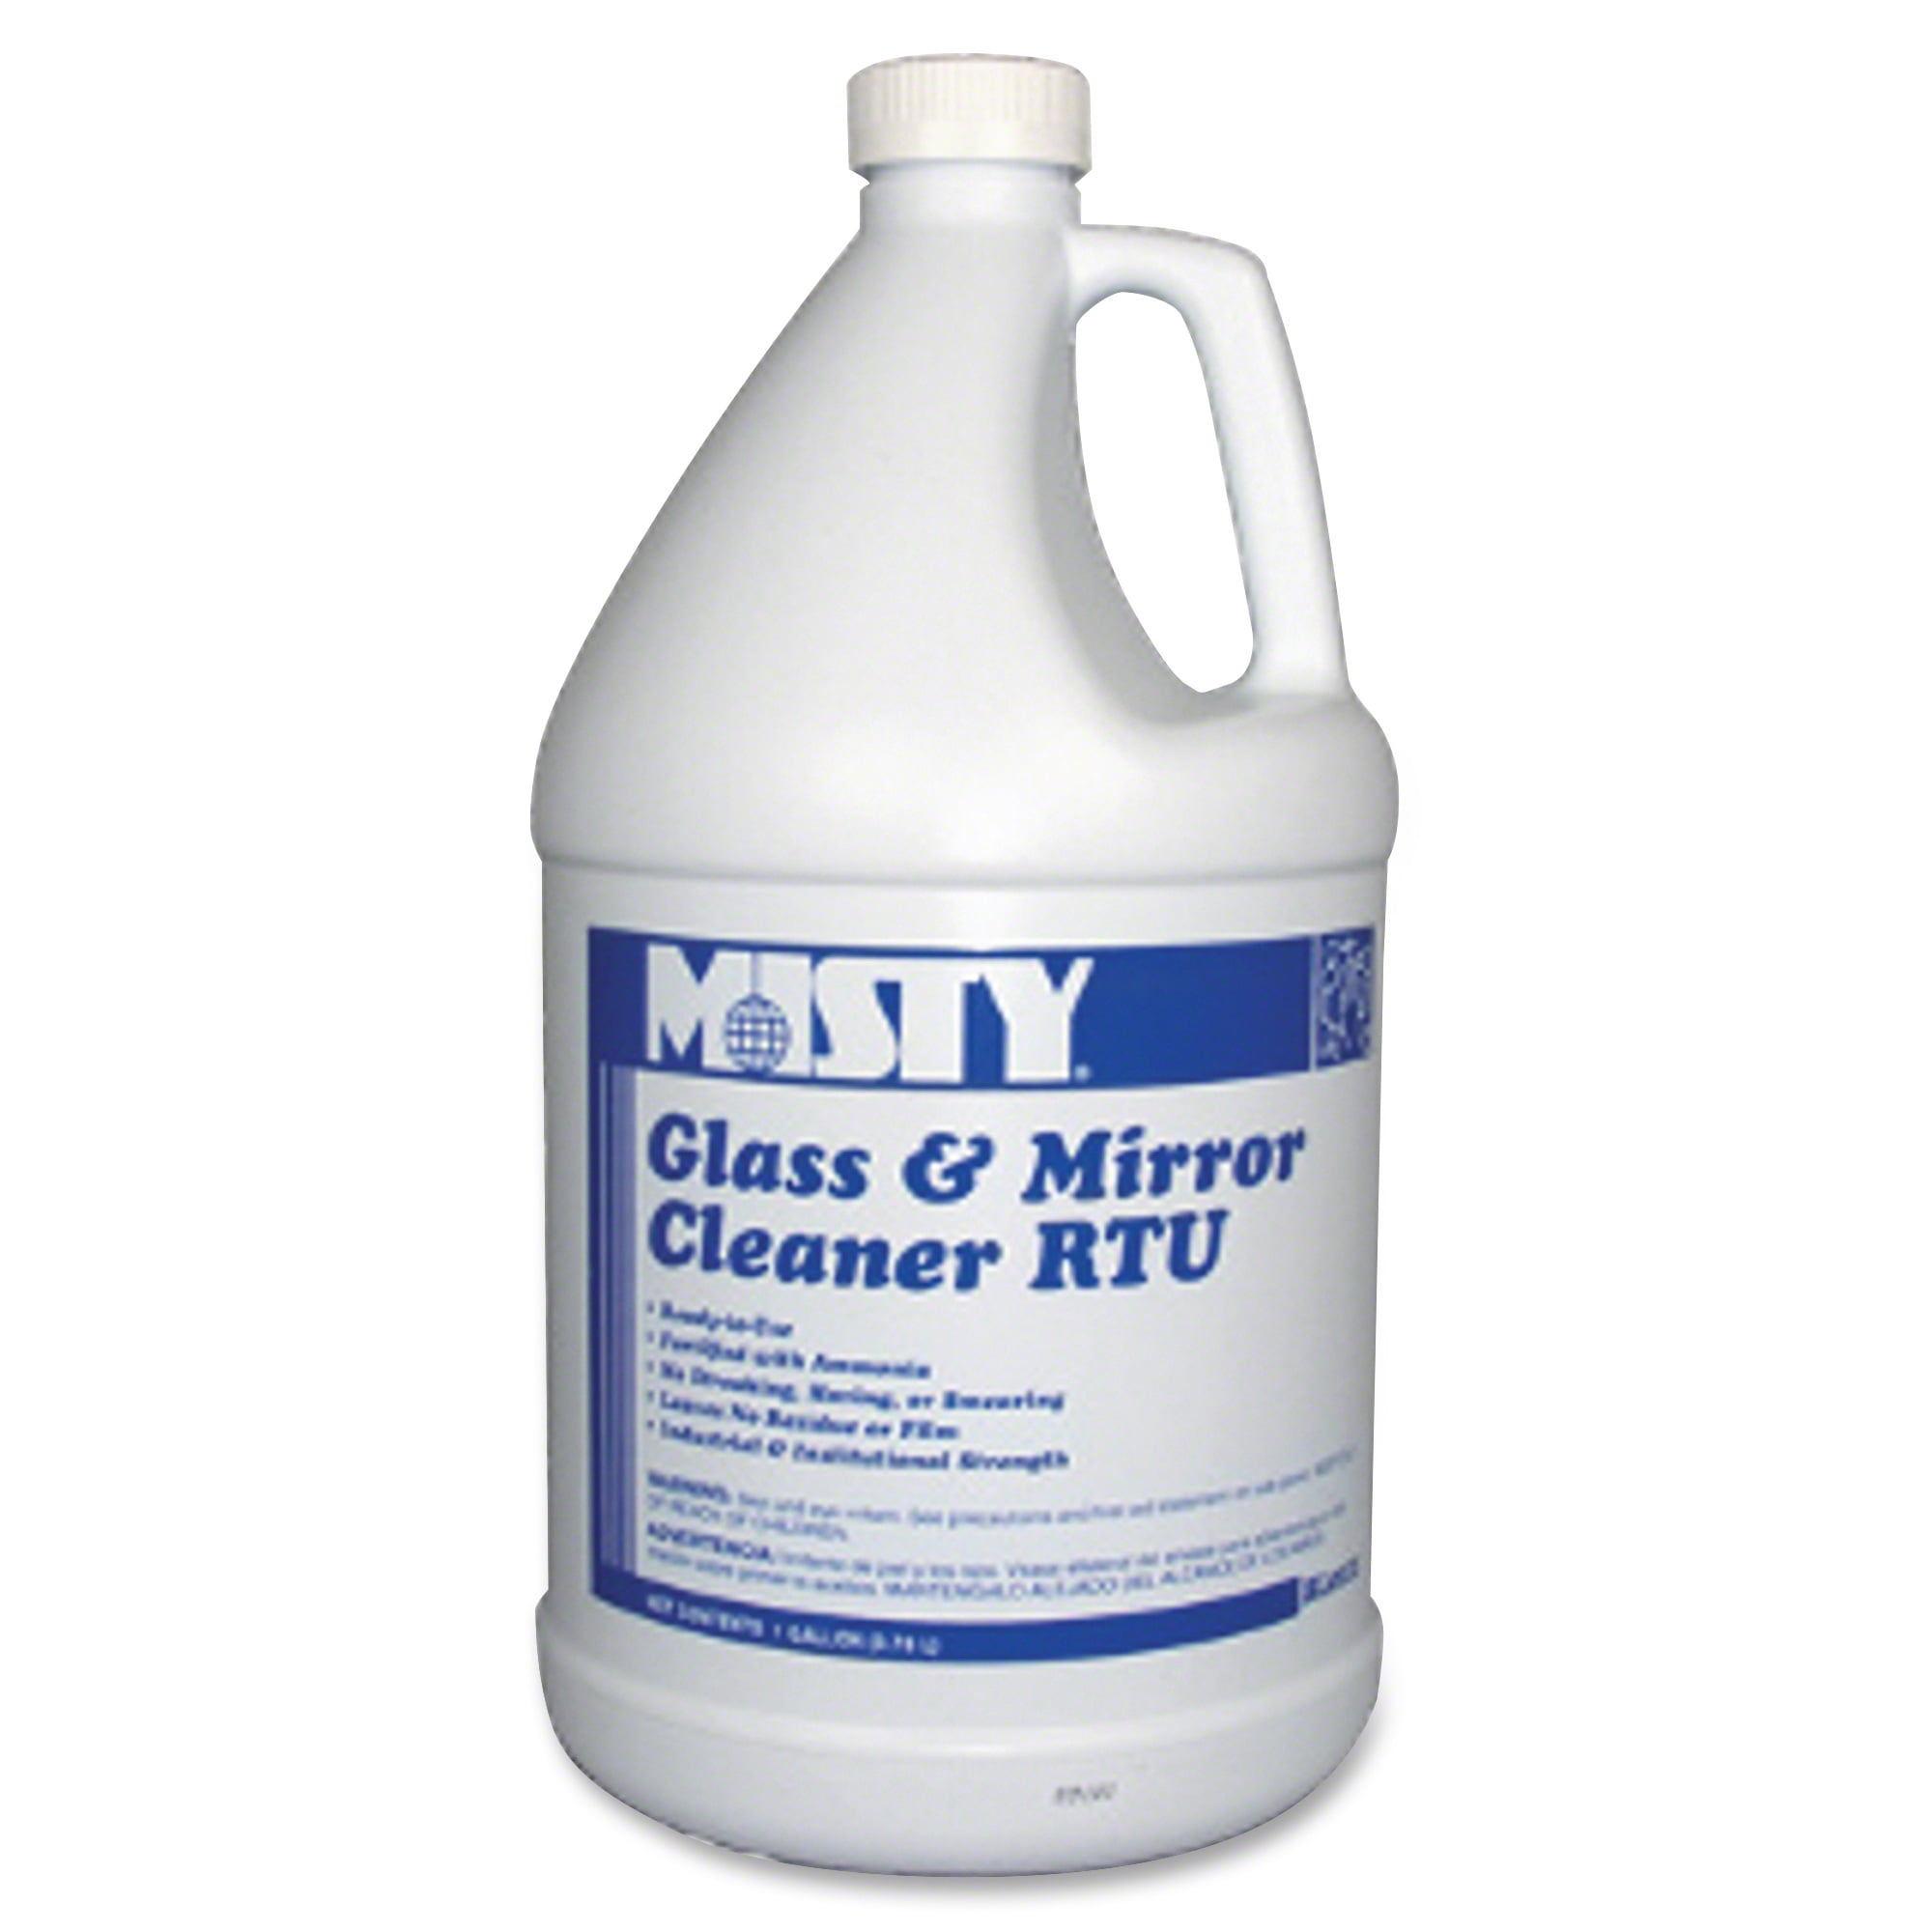 Misty Glass & Mirror Cleaner w Ammonia 1gal Bottle Walmart